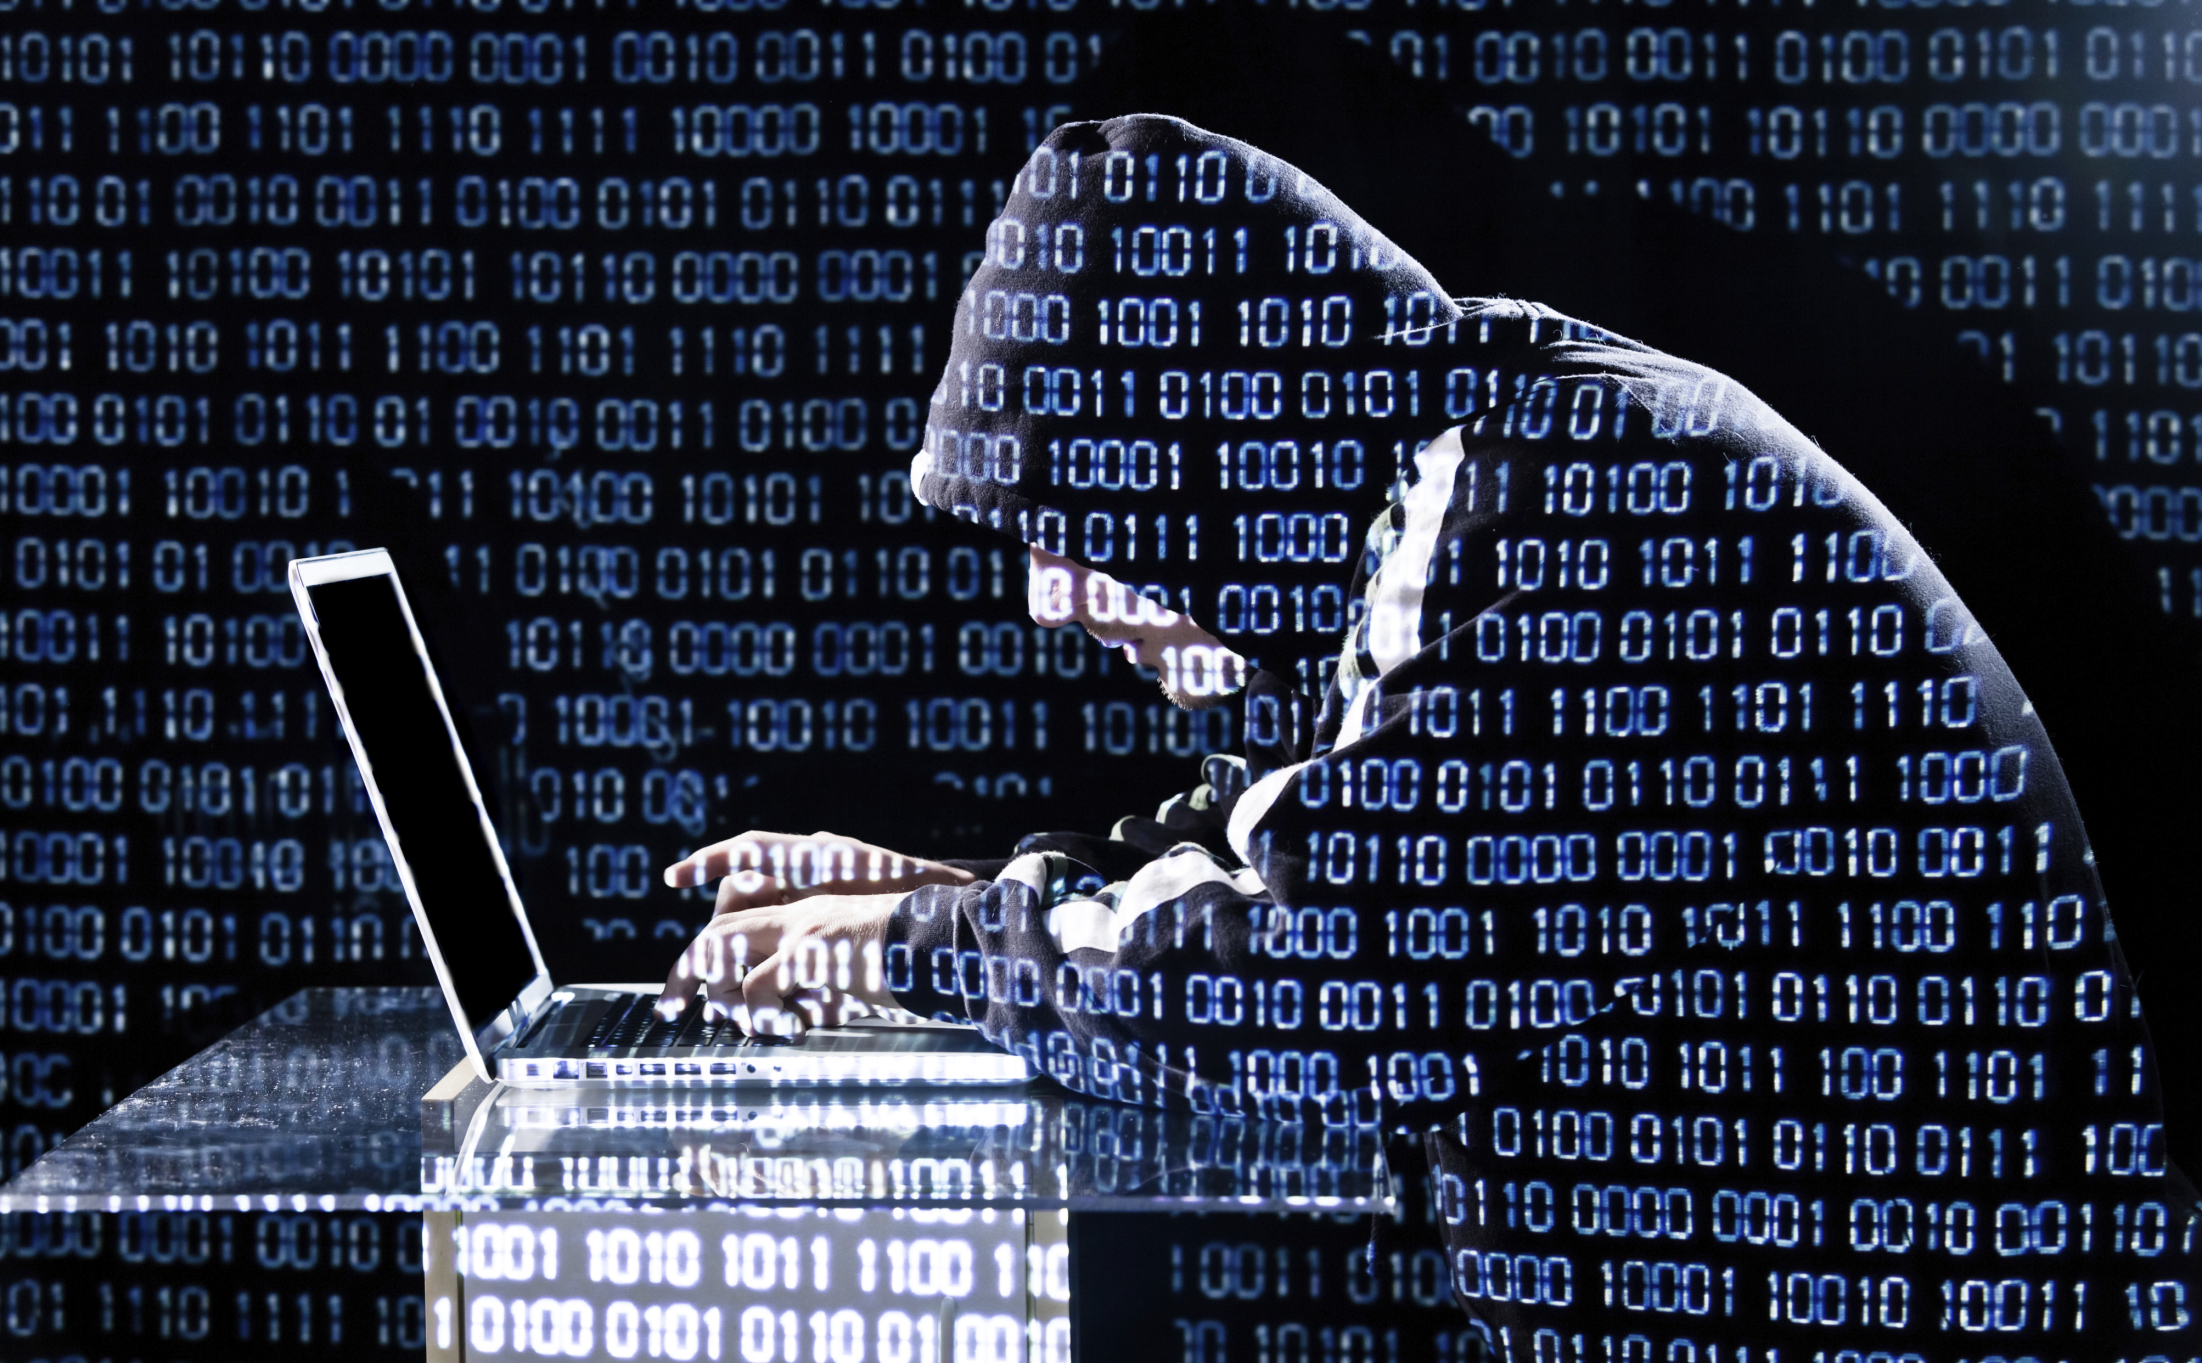  Nasce il ‘Comitato nazionale per la ricerca in cybersecurity’ costituito da Cnr e Cini